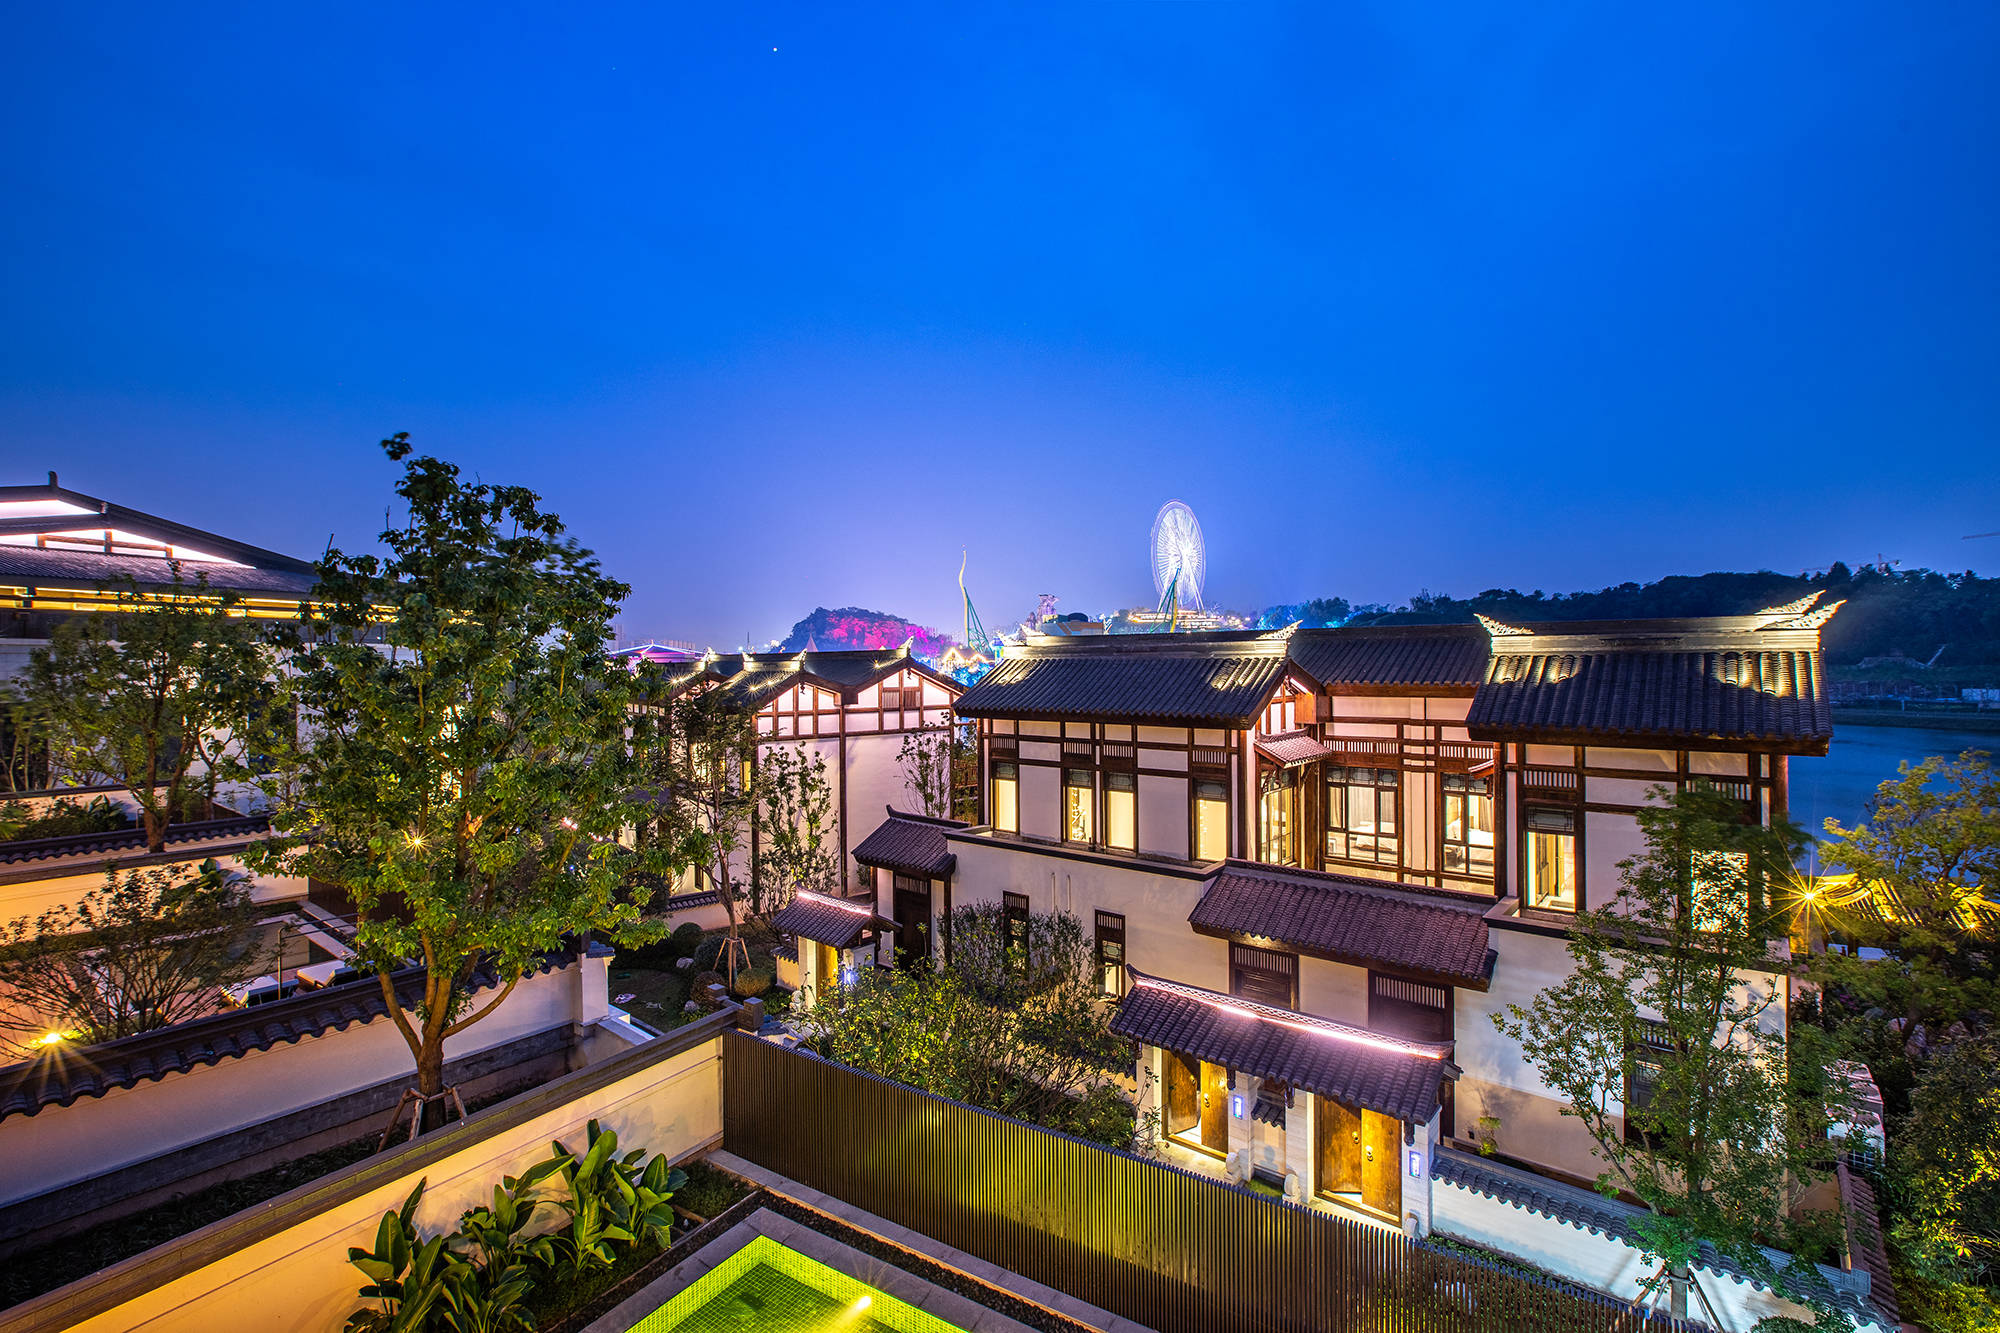 重庆融创文旅城酒店群坐落于重庆市沙坪坝区,是主城区内度假型岛式